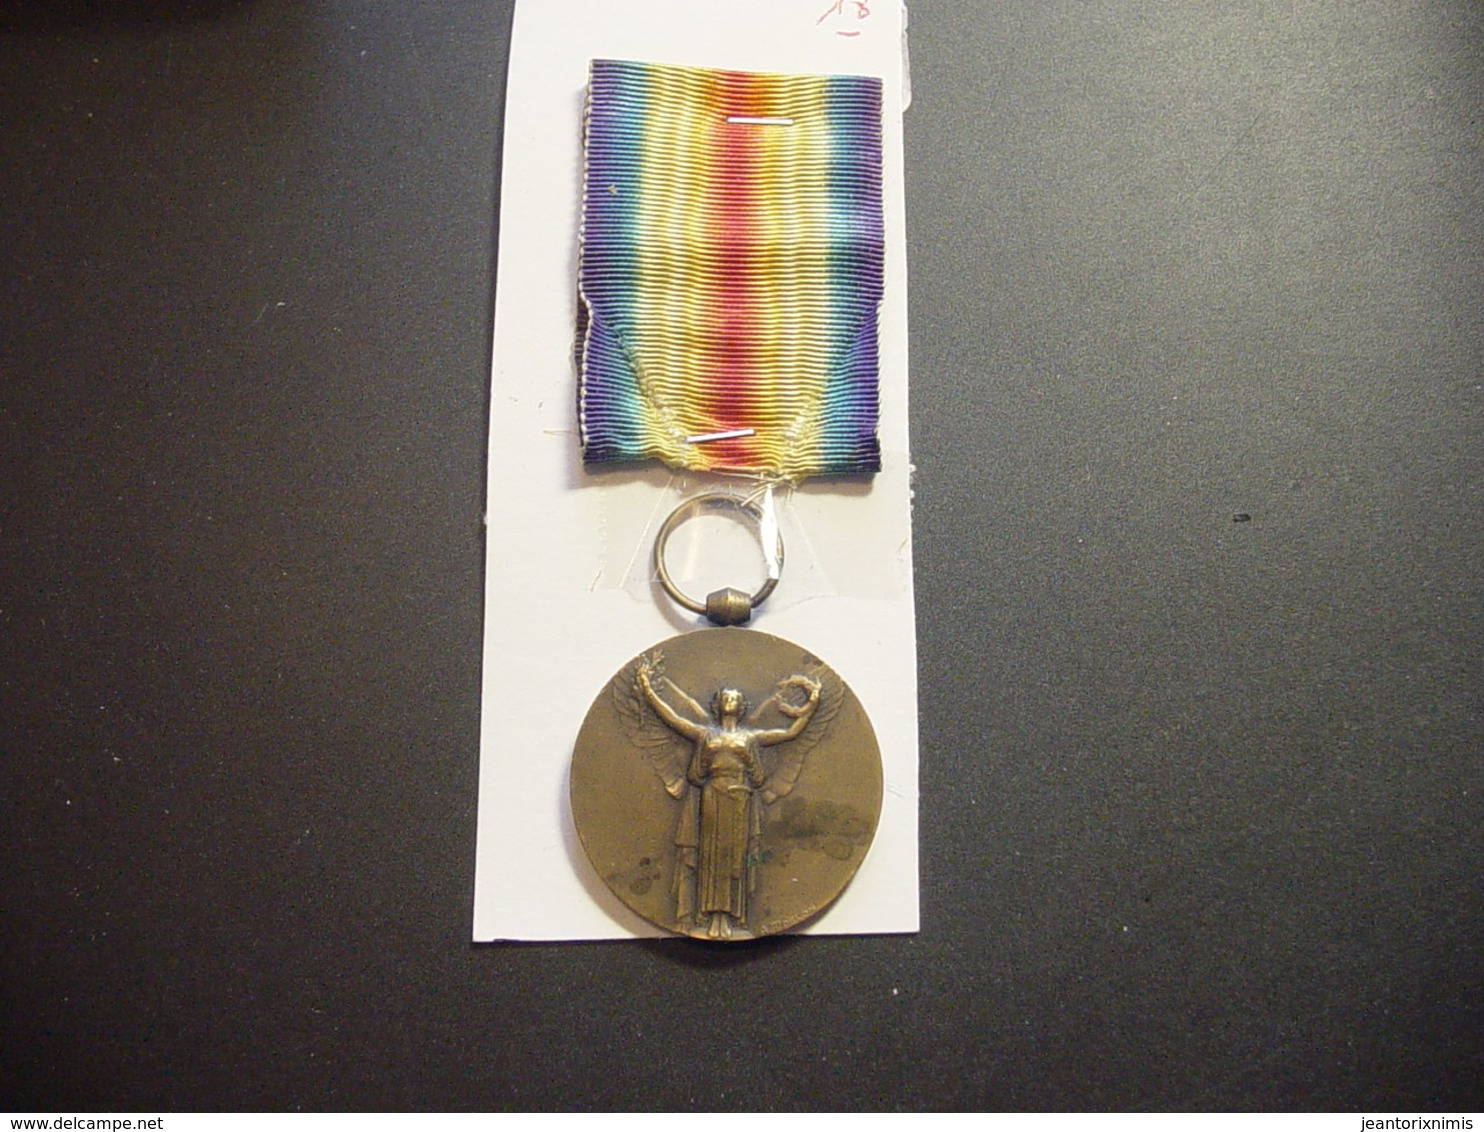 Médaille République Française: "La Grande Guerre Pour La Civilisation" 1914 - 1918 - France